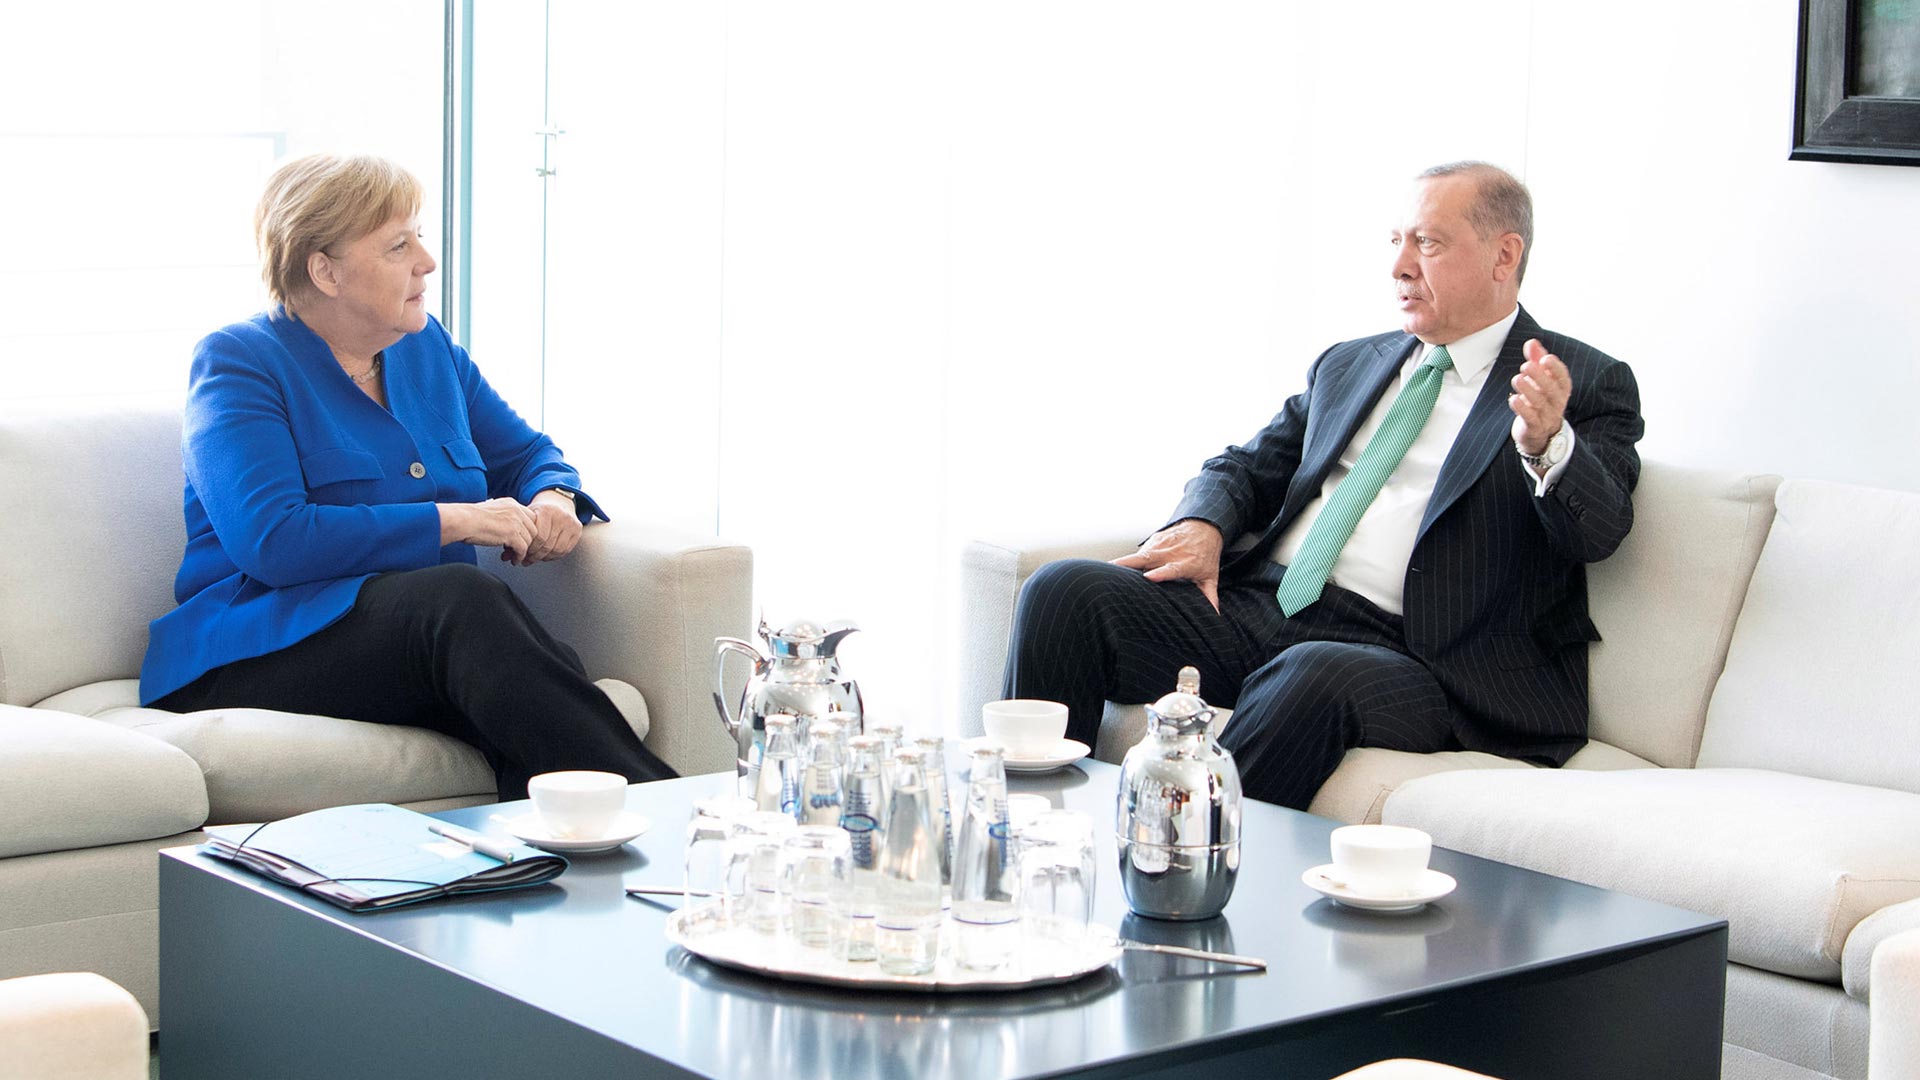 Distensión entre Merkel y Erdogan pese a las "profundas diferencias" entre sus países